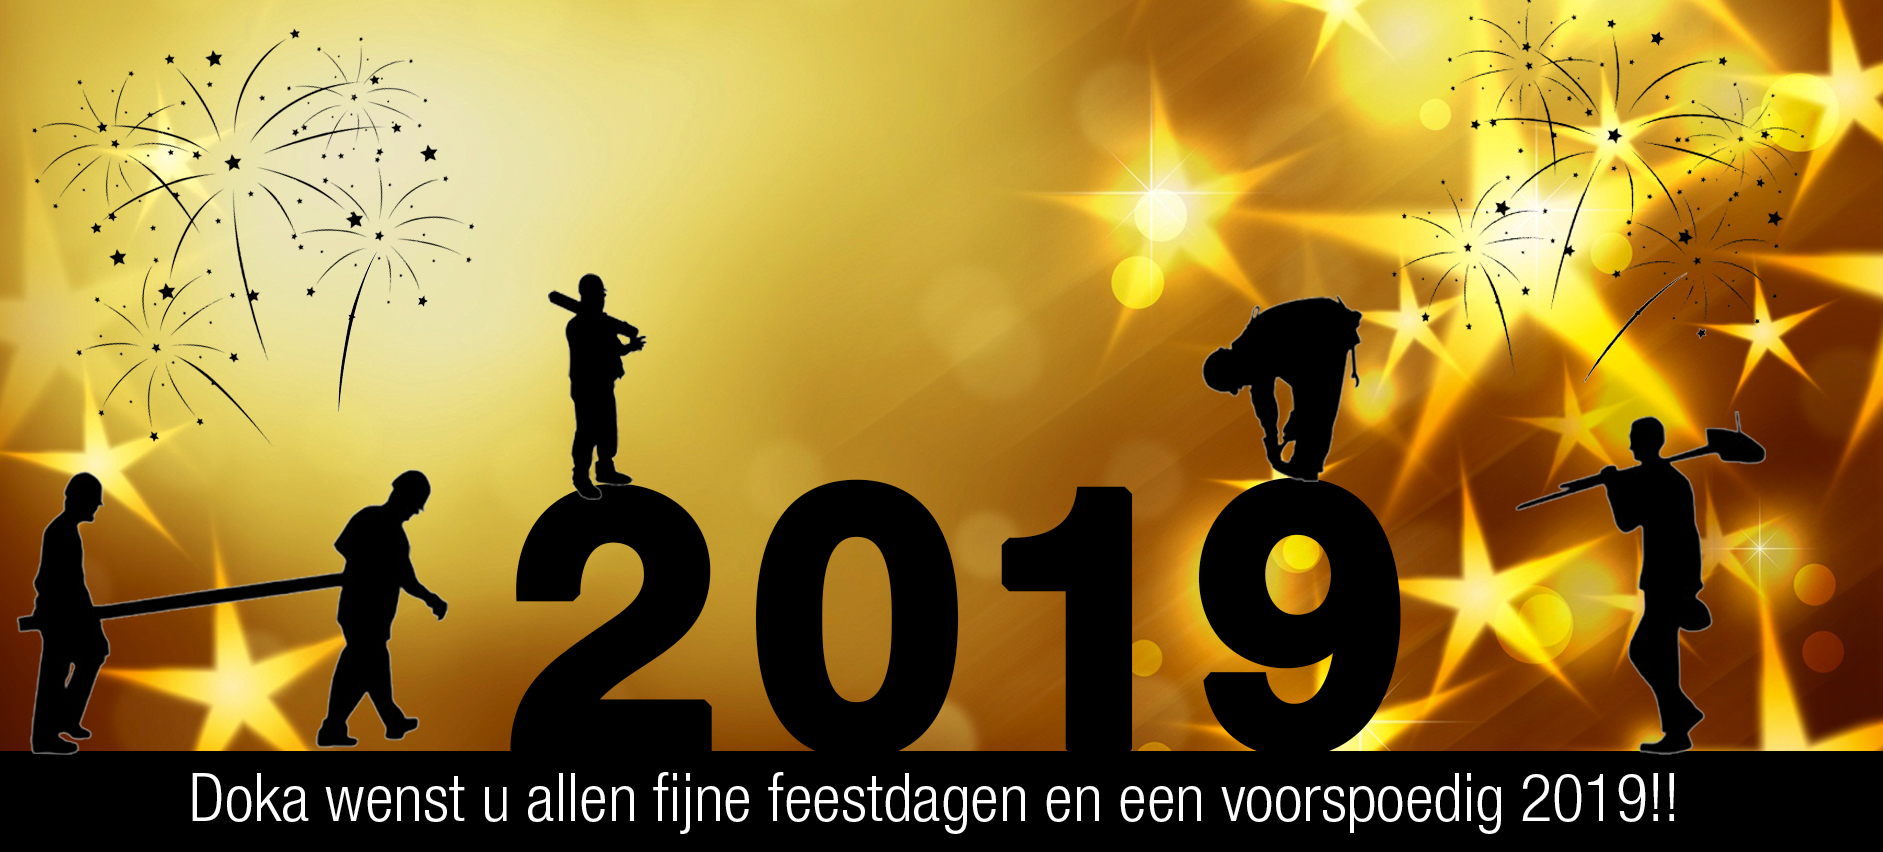 christmas 2018-dned-NL.jpg